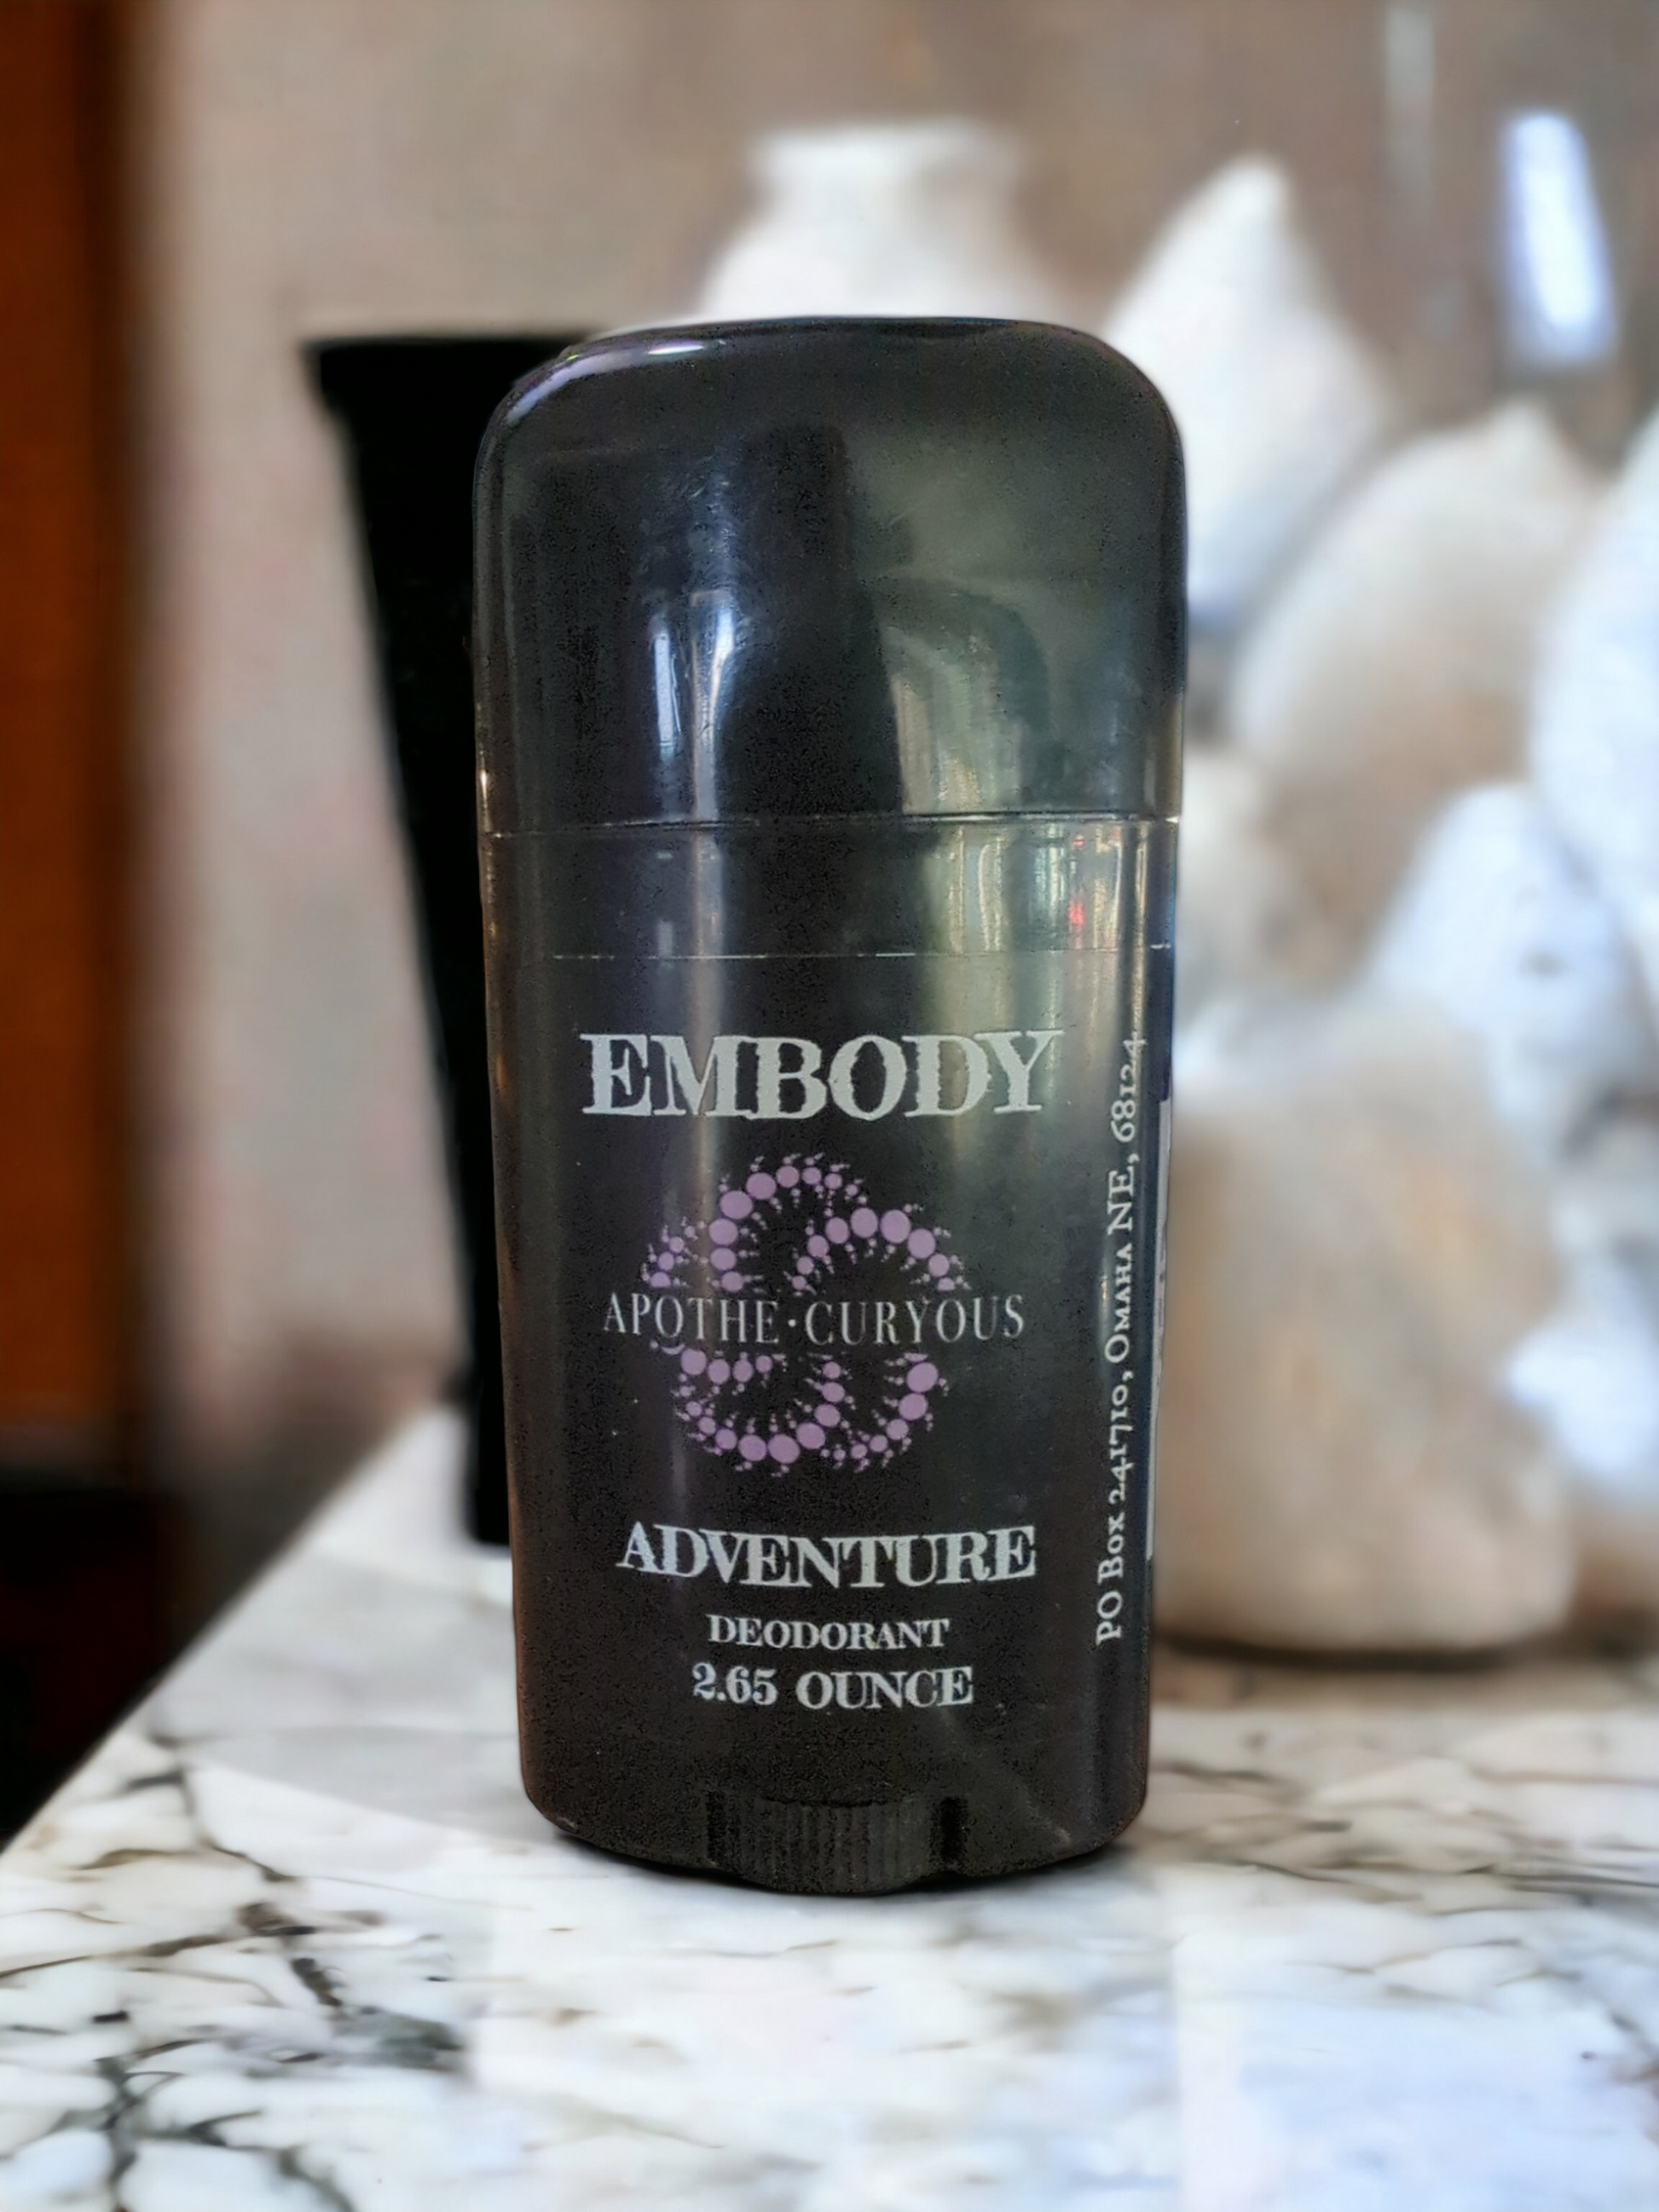 Embody deodorant, Adventure, Apothecuryous